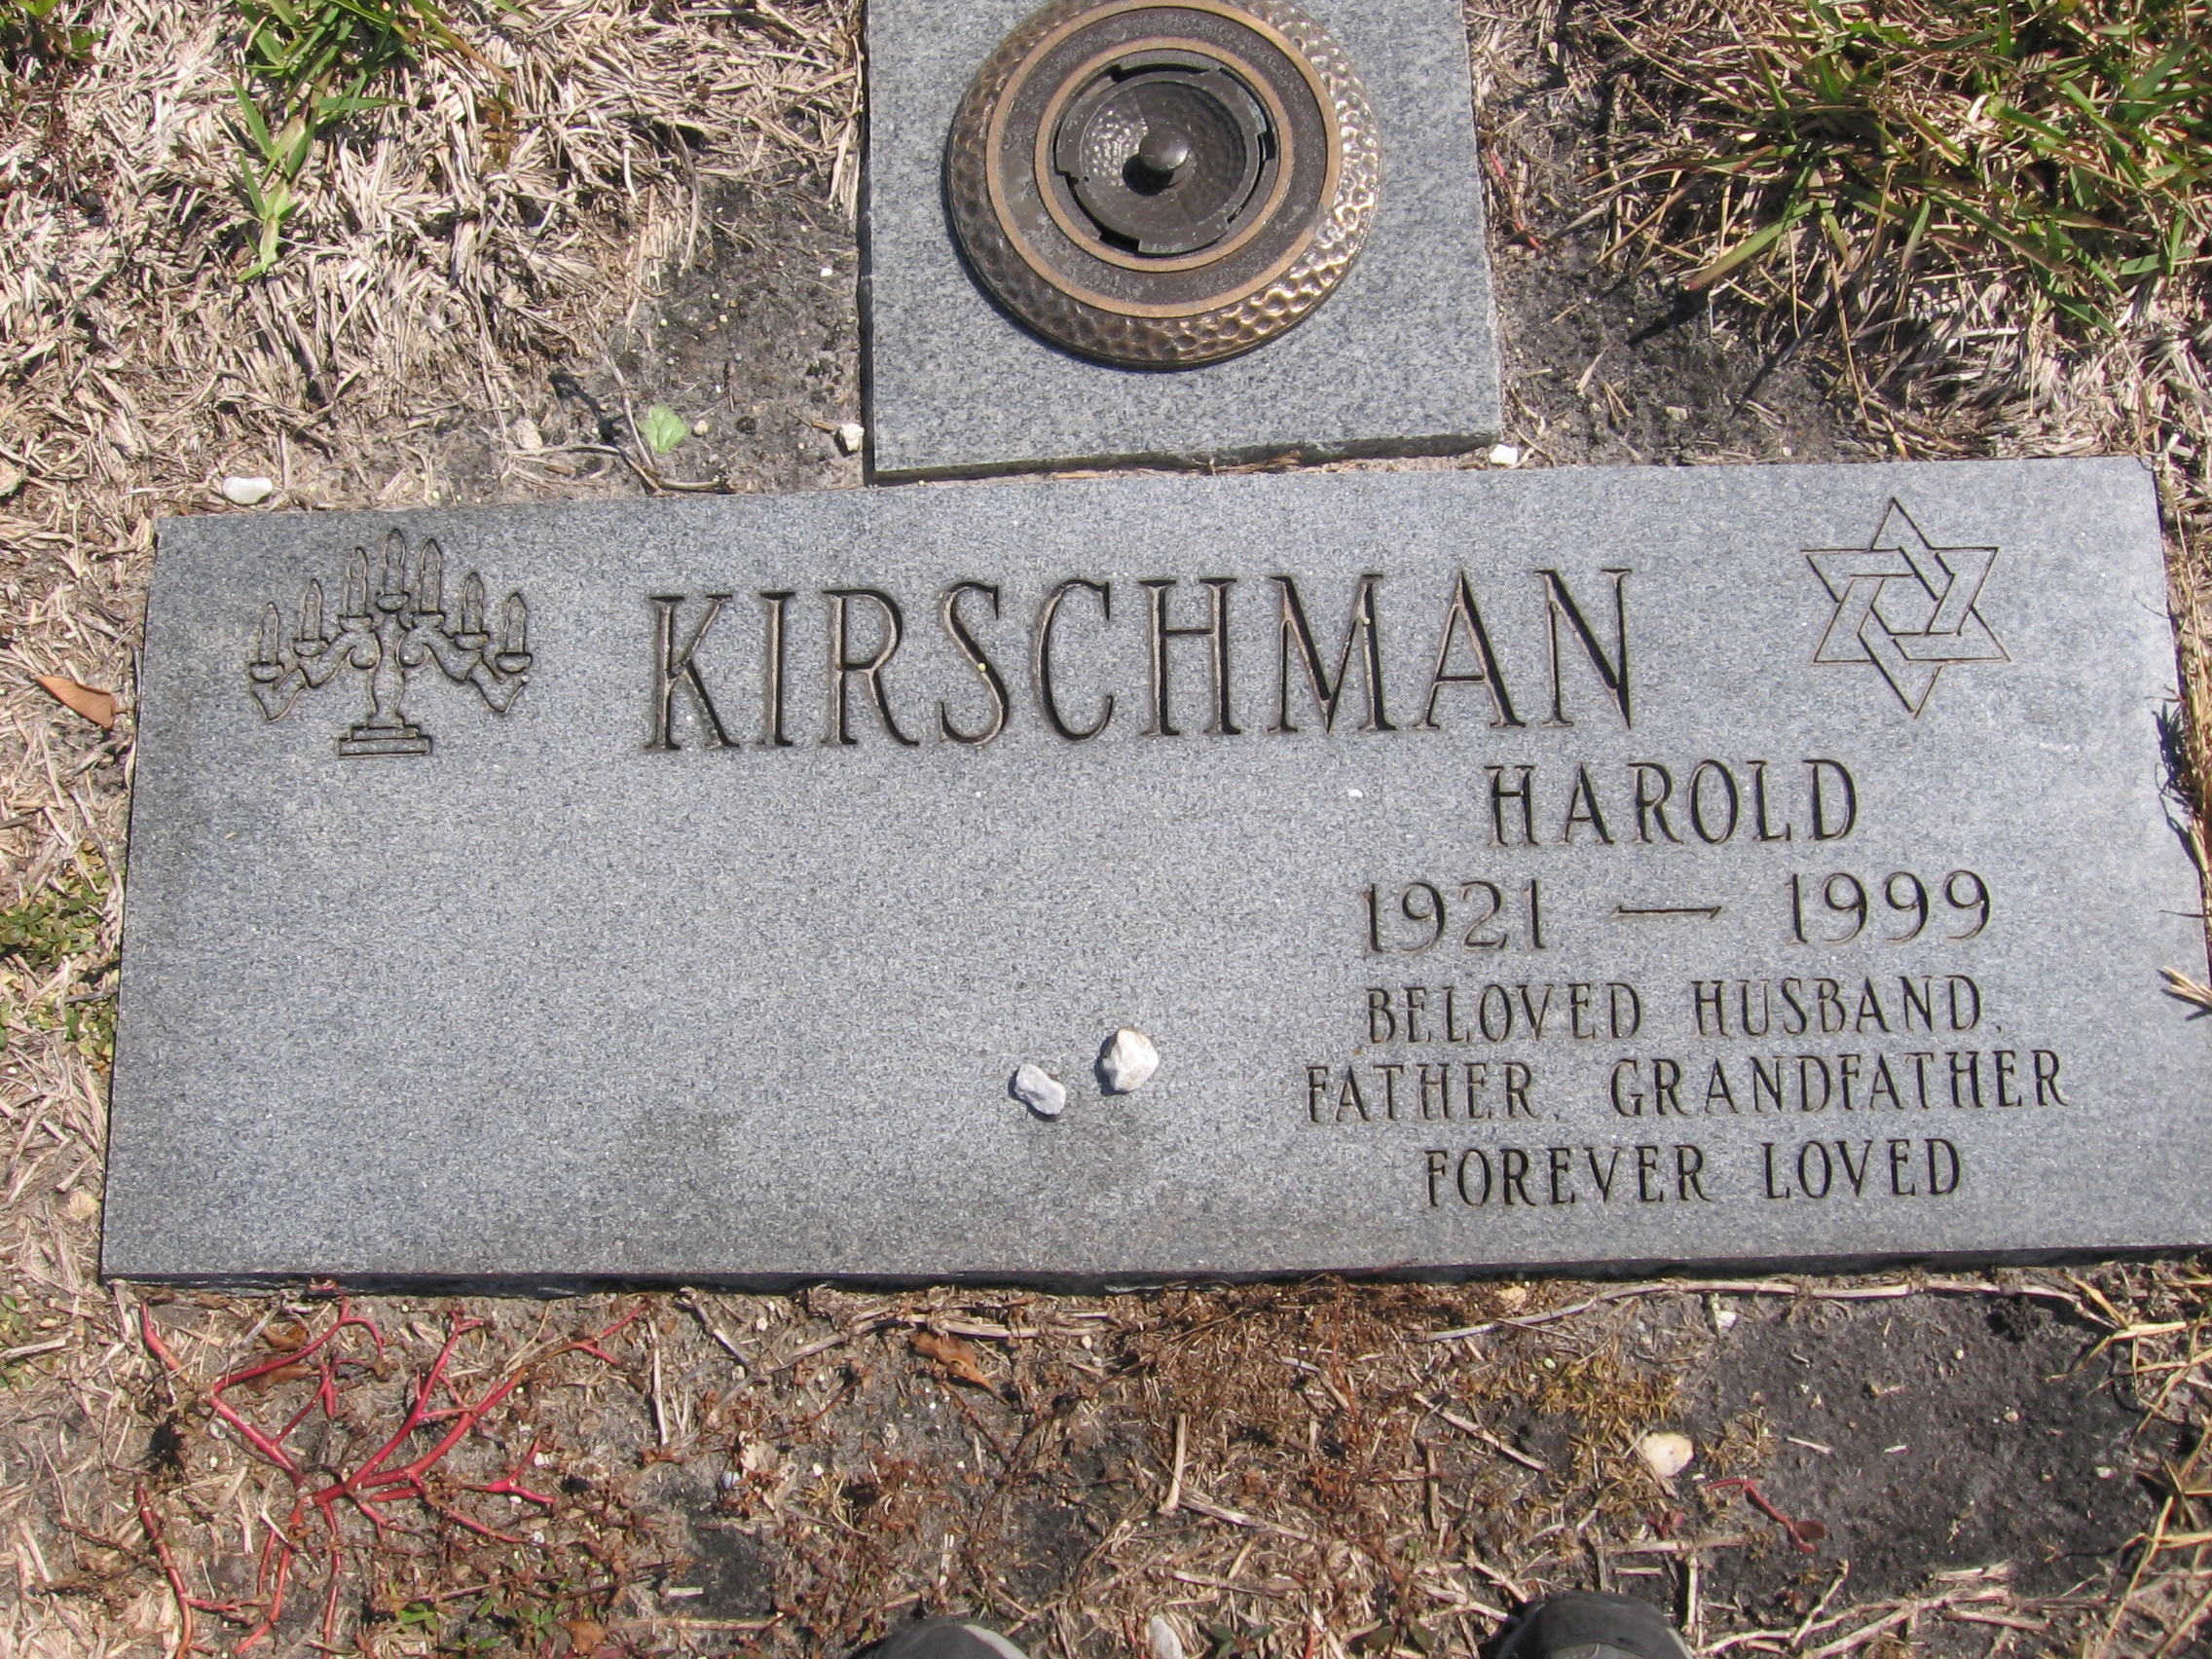 Harold Kirschman